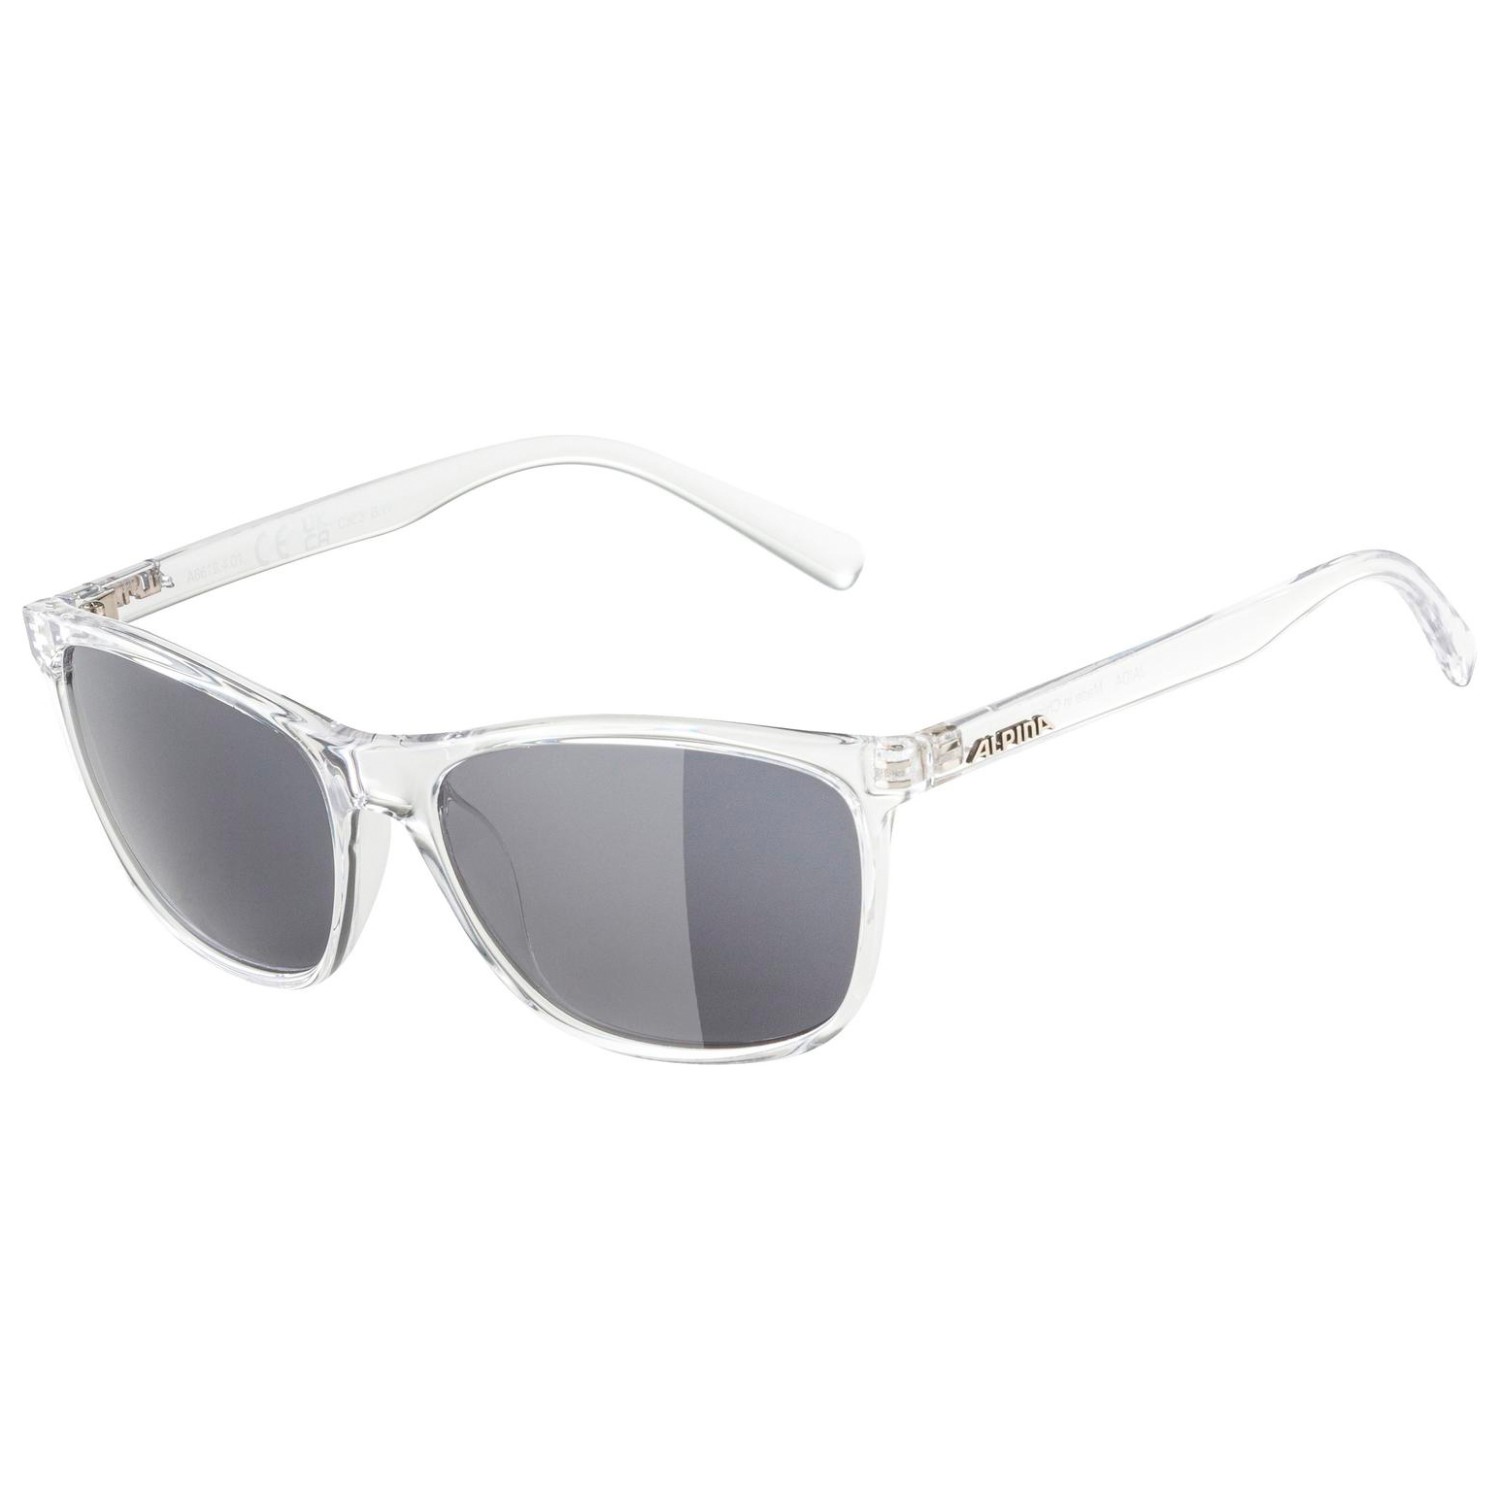 Солнцезащитные очки Alpina Jaida Ceramic S3, цвет Transparent Gloss очки солнцезащитные alpina luzy белый пурпурный зеркальный a8571310